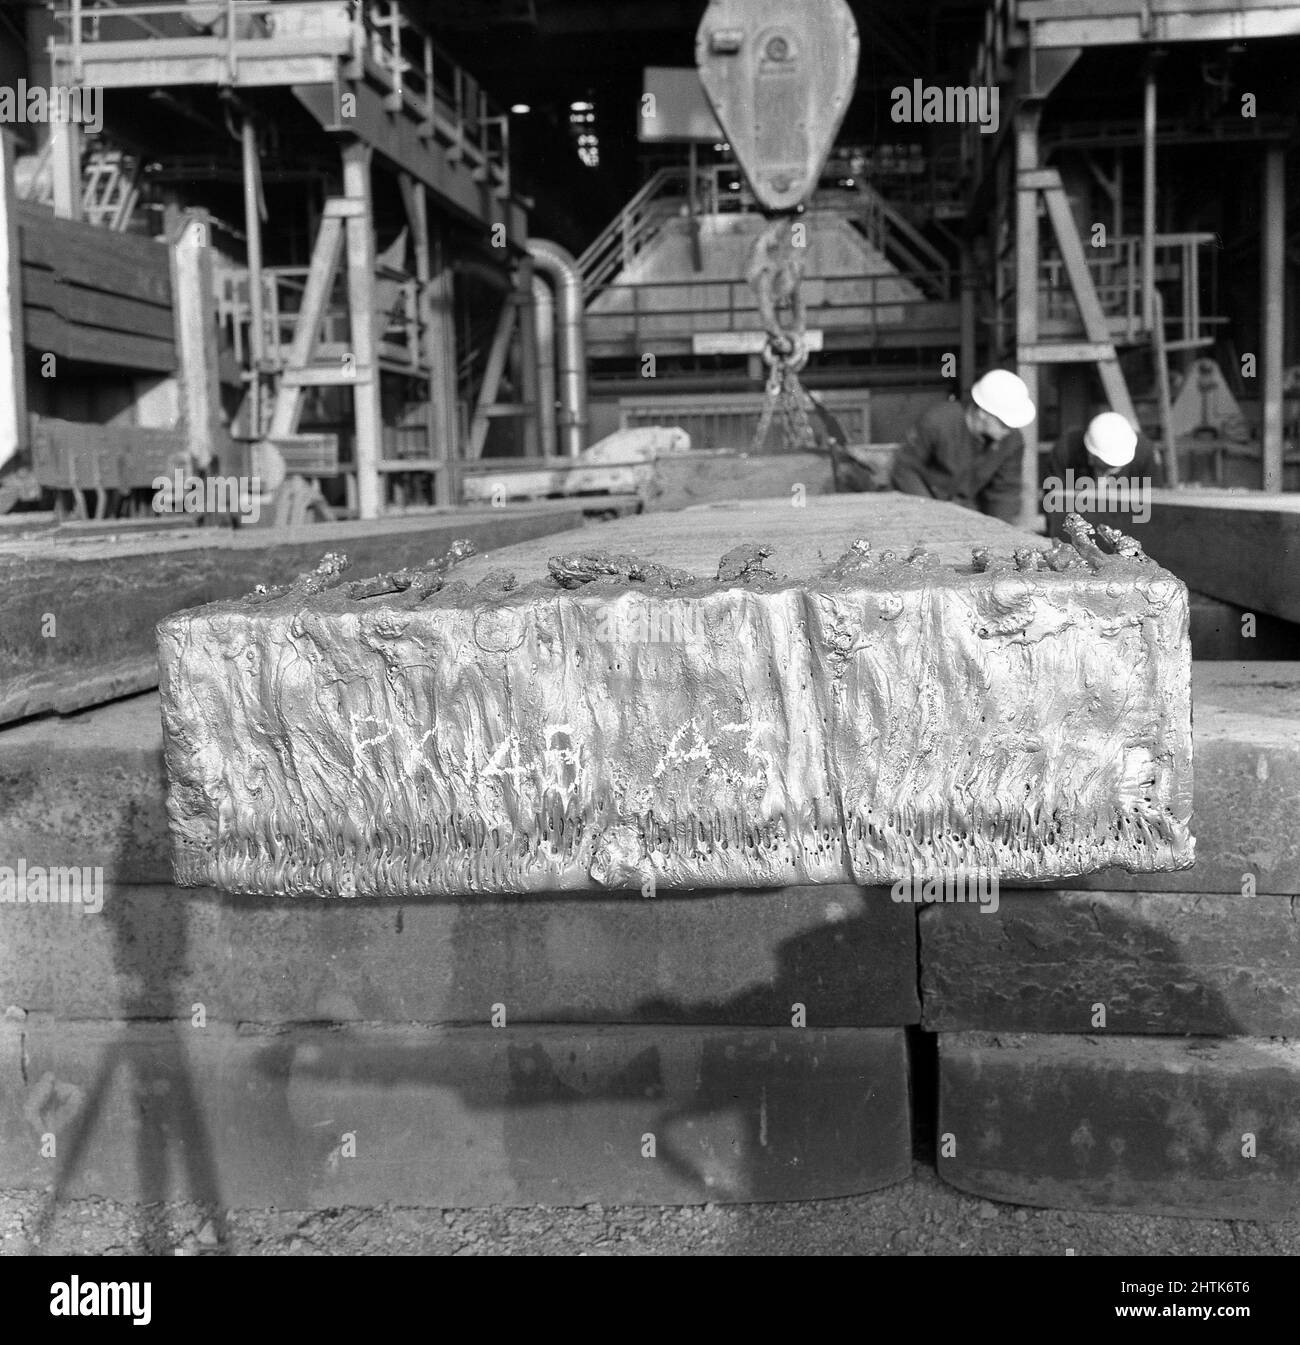 1950s, historisch, eine rechteckige Stahlplatte, mit Markierungen, in einer Slabing-Mühle in der Abbey Steel Works, Port Talbot, Glamorgan, Wales, Großbritannien. Traditionell hergestellt durch einen Hochofen, sind Platten halbfertige Metallblöcke, die für die Herstellung von "flachen" Stahlprodukten wie Blechen, Platten und anderem flachgewalztem Stahl verwendet werden. Stockfoto